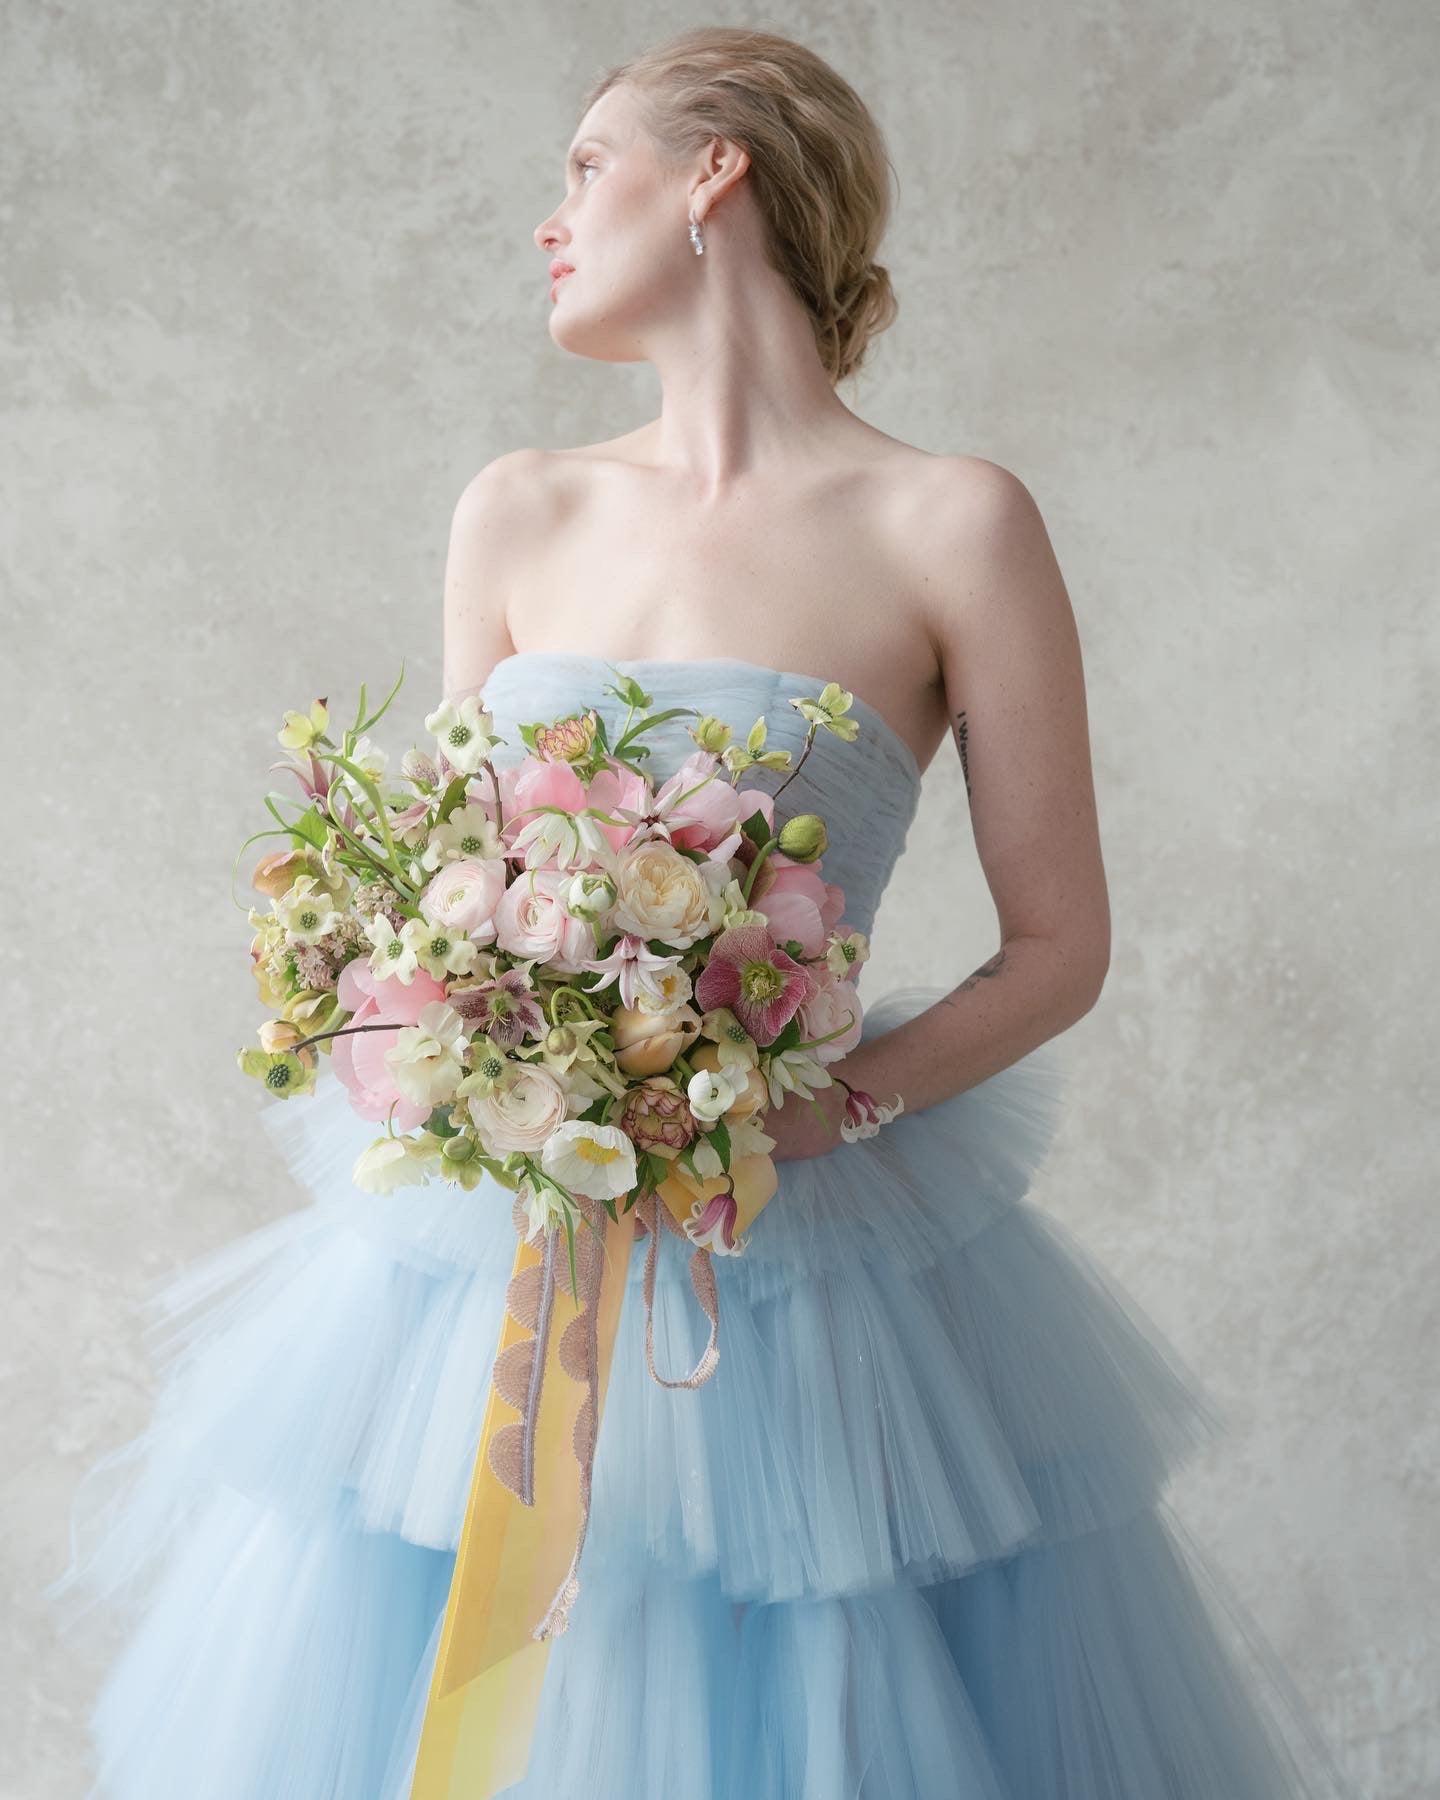 bride in a baby blue Oscar de la Renta dress holding a fresh flower bouquet.